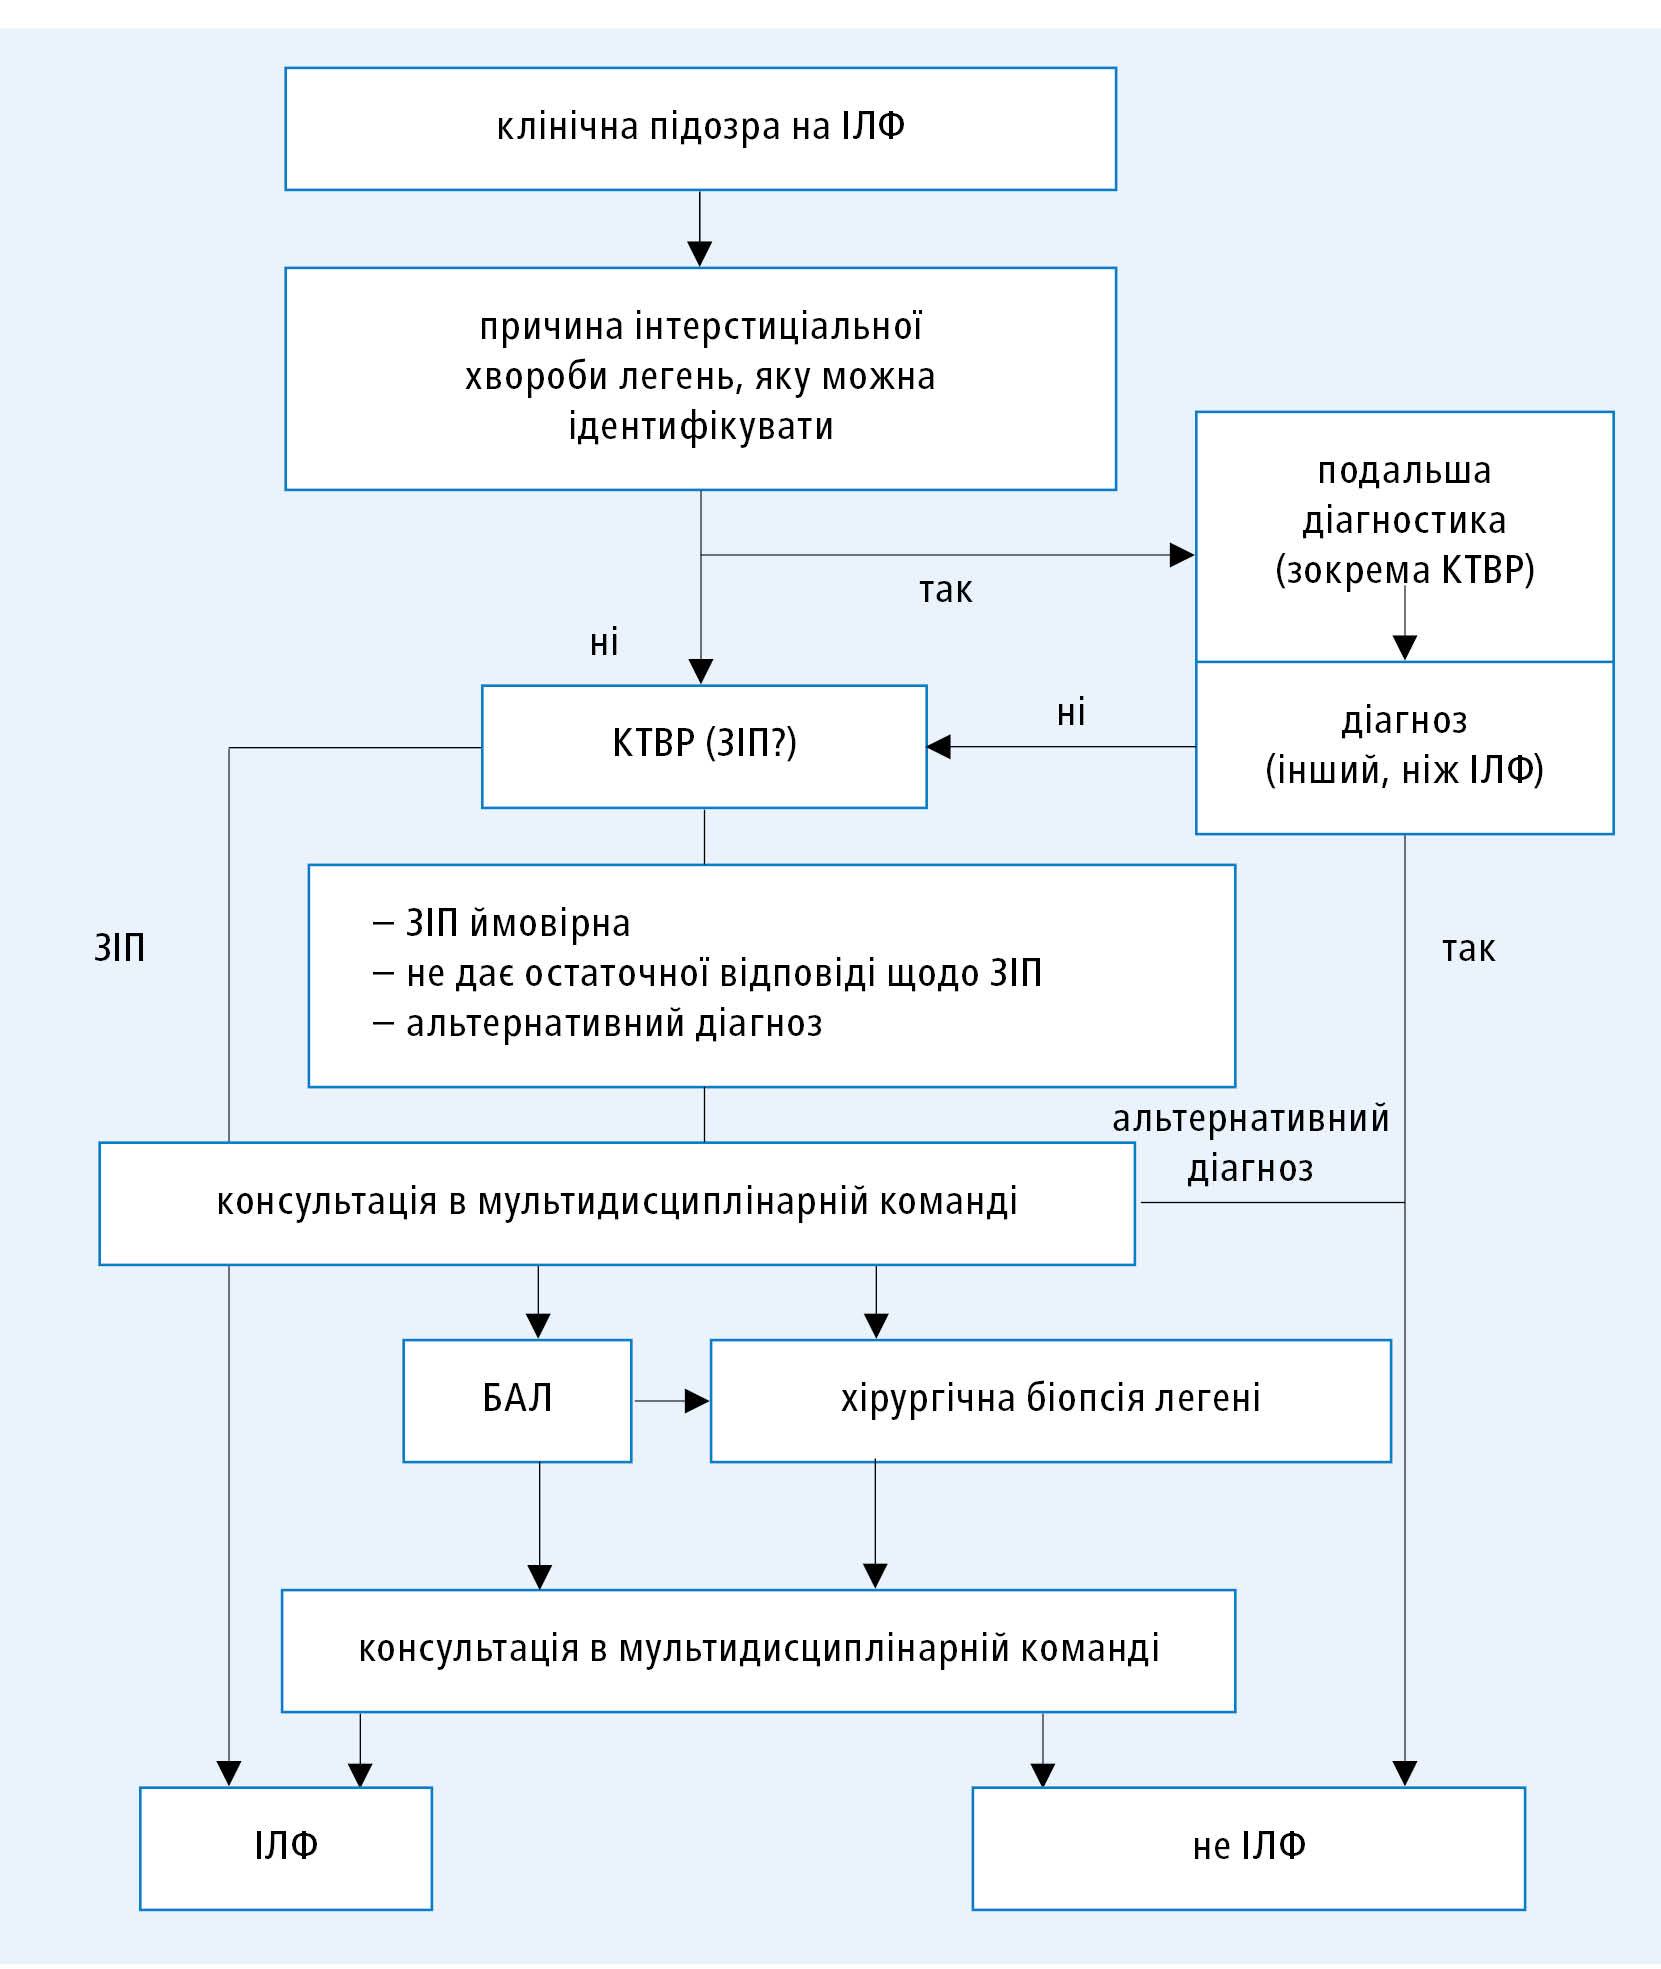 Діагностична схема ІЛФ (на основі міжнародних клінічних протоколів ATS/ERS/JRS/ALAT 2018, змодифіковано)